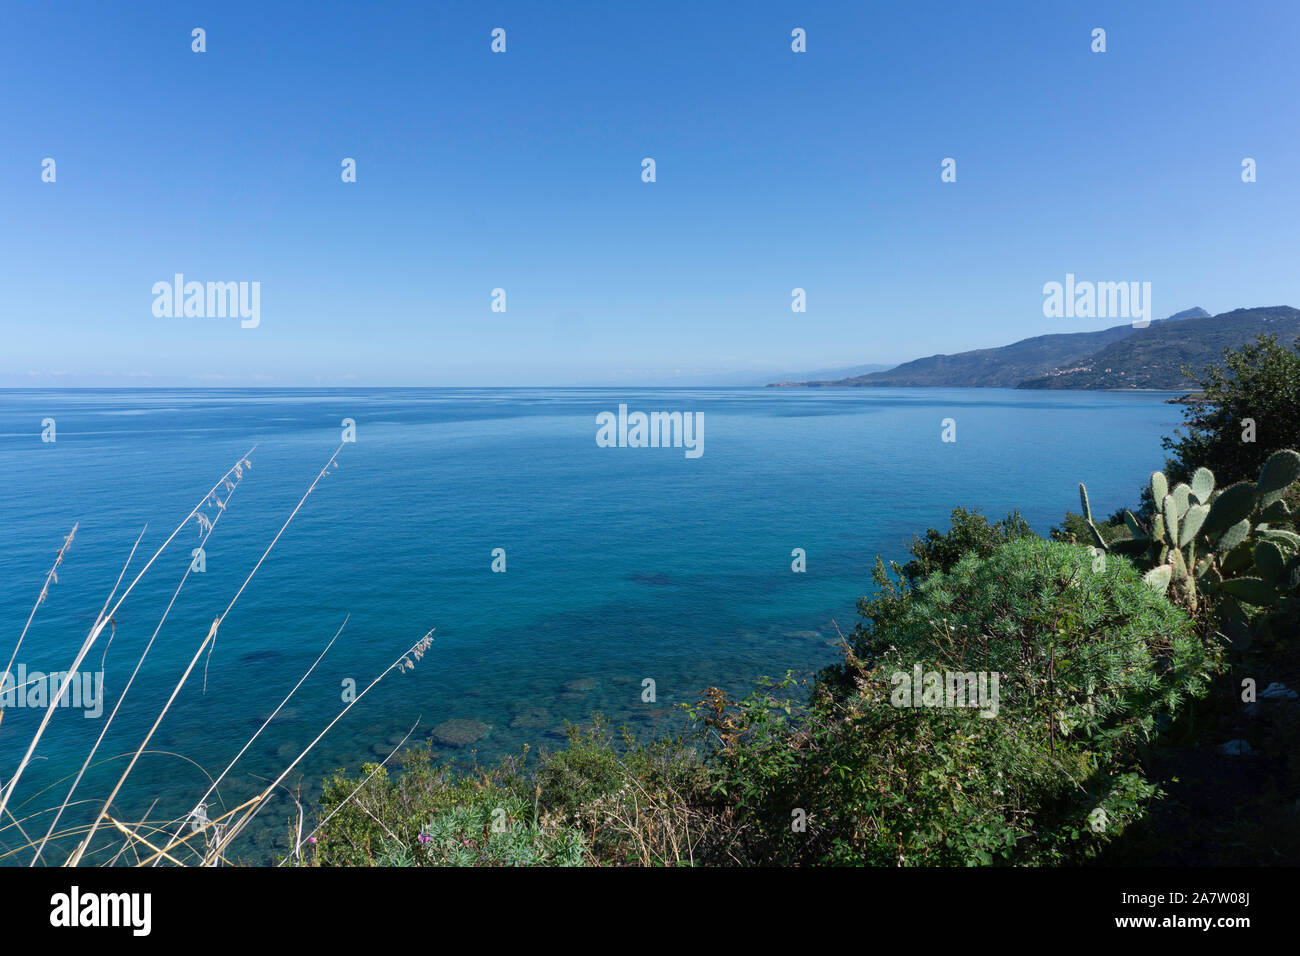 Les eaux bleu clair de la Méditerranée autour de la côte de Cefalú sur l'île de la Sicile, en Italie. Banque D'Images